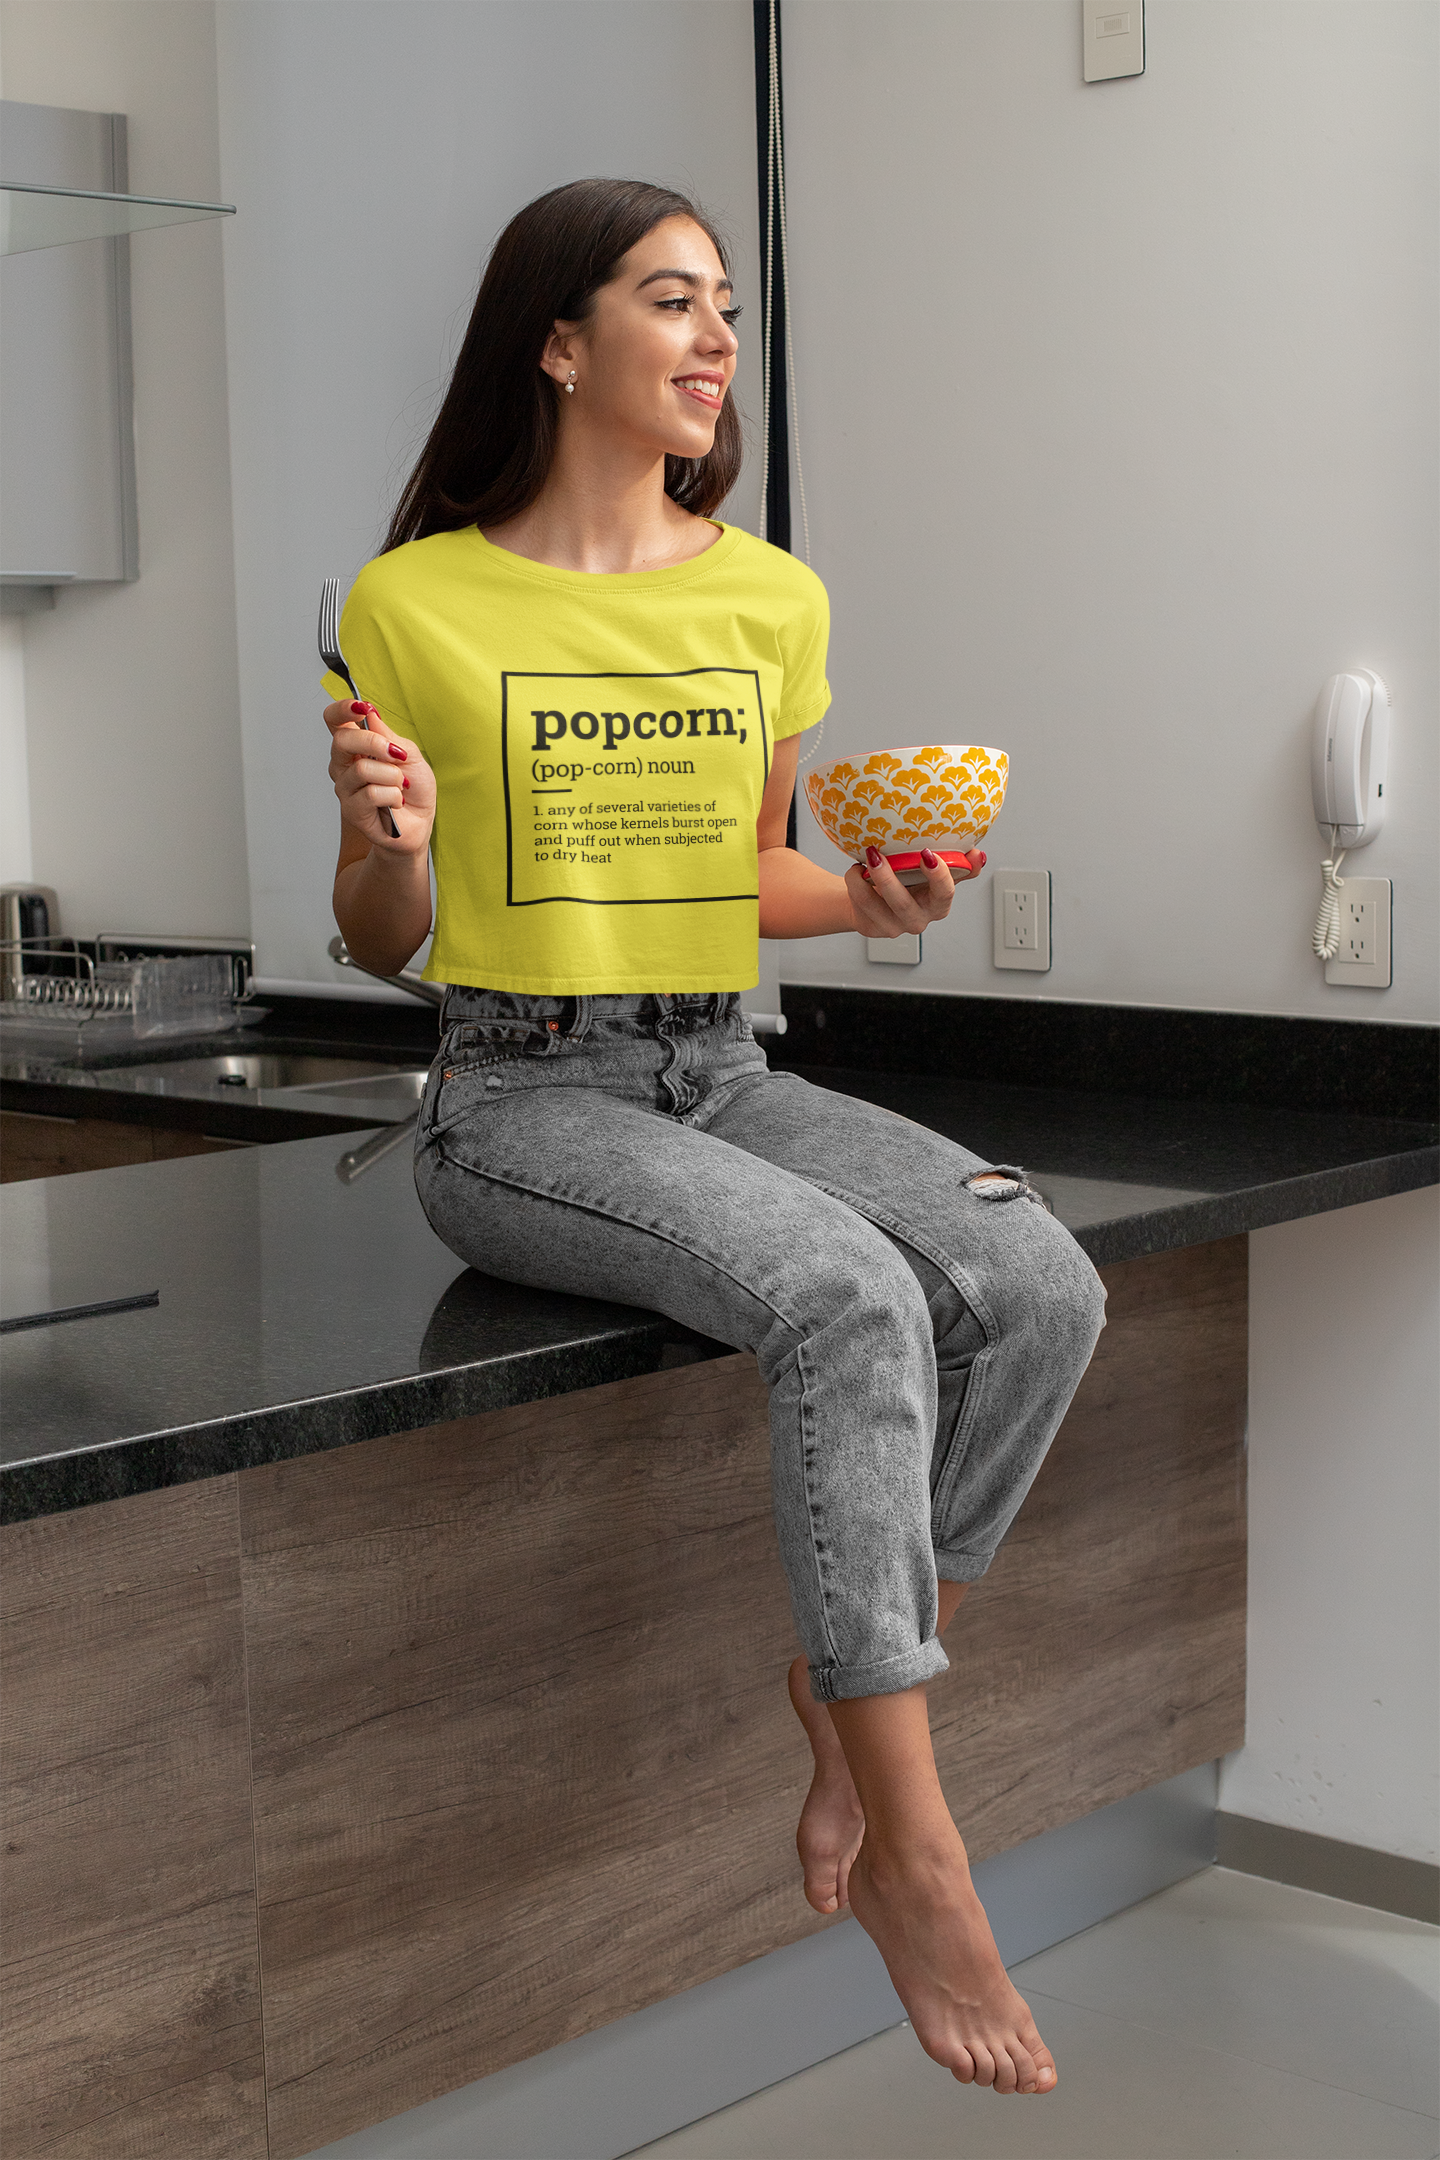 Label pantry popcorn definition Women Crop Top- FunkyTeesClub